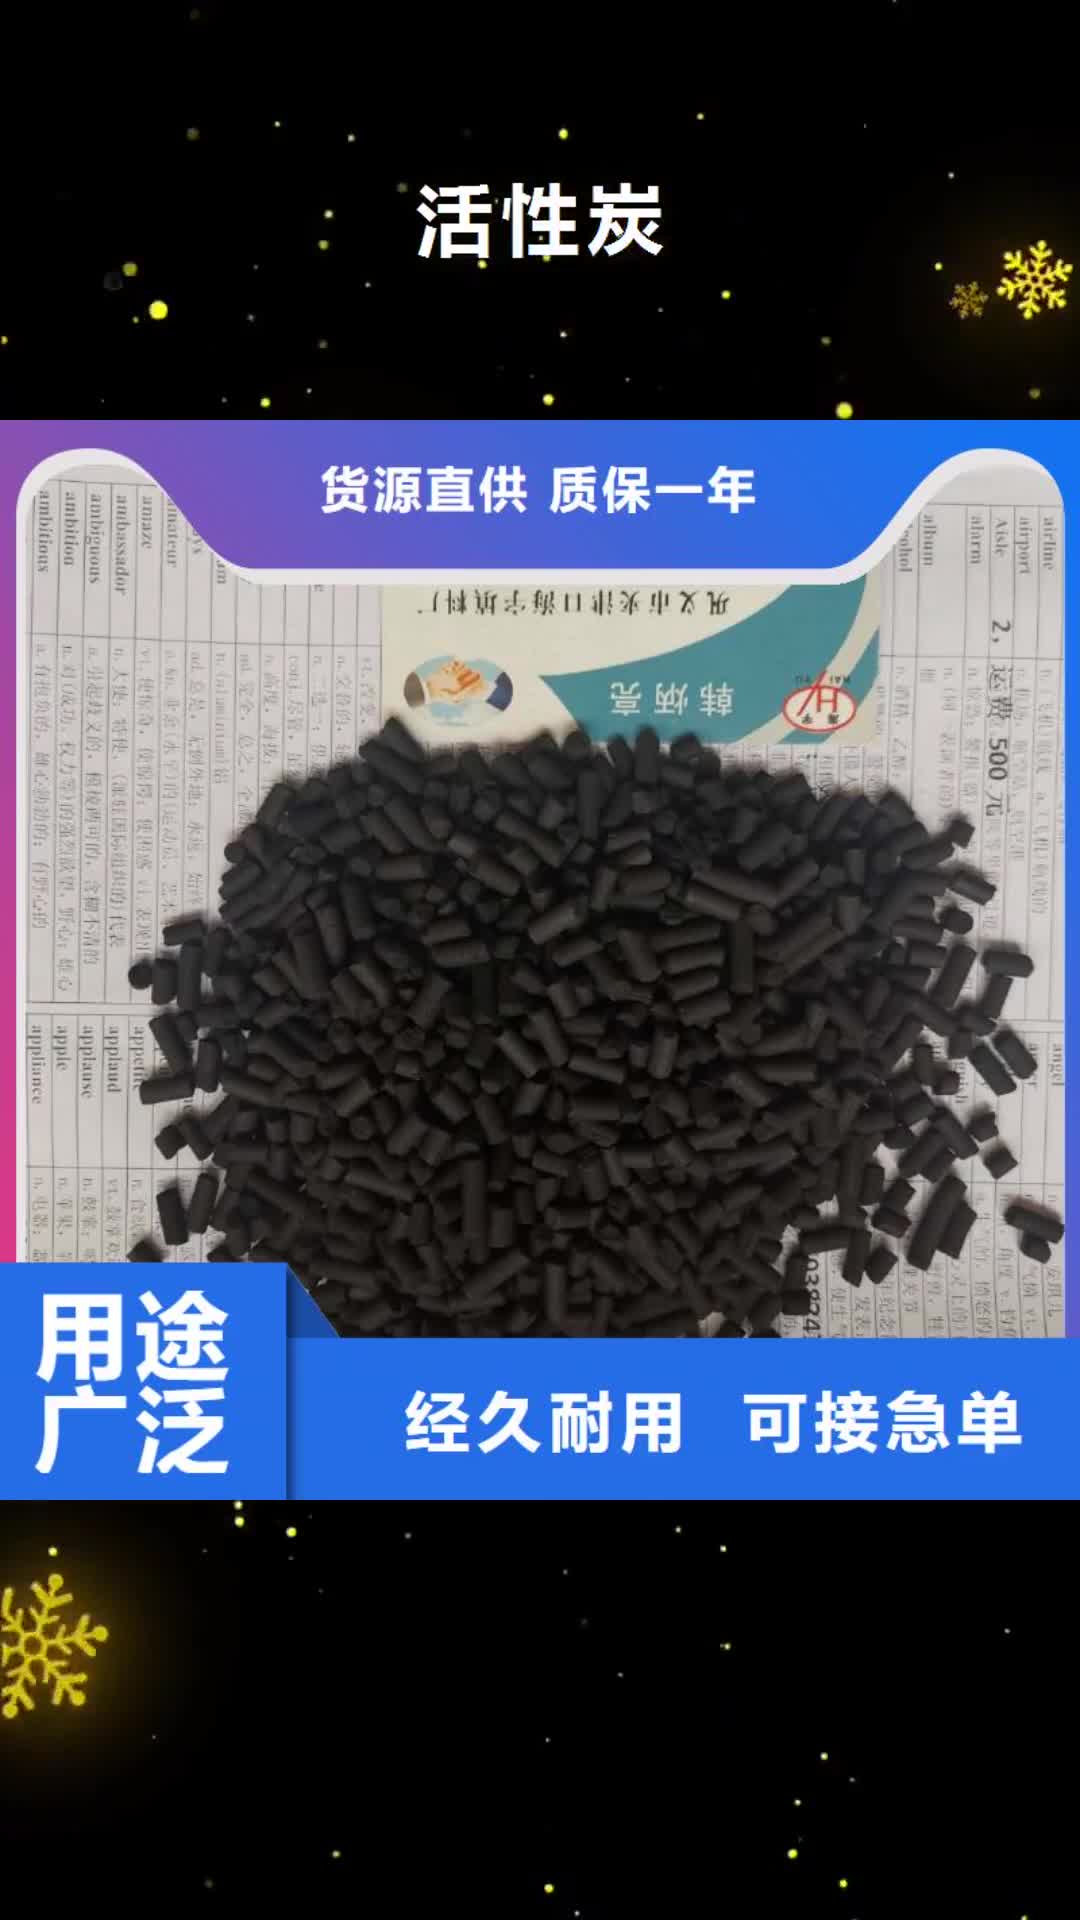 贵港 活性炭 【沸石】生产加工